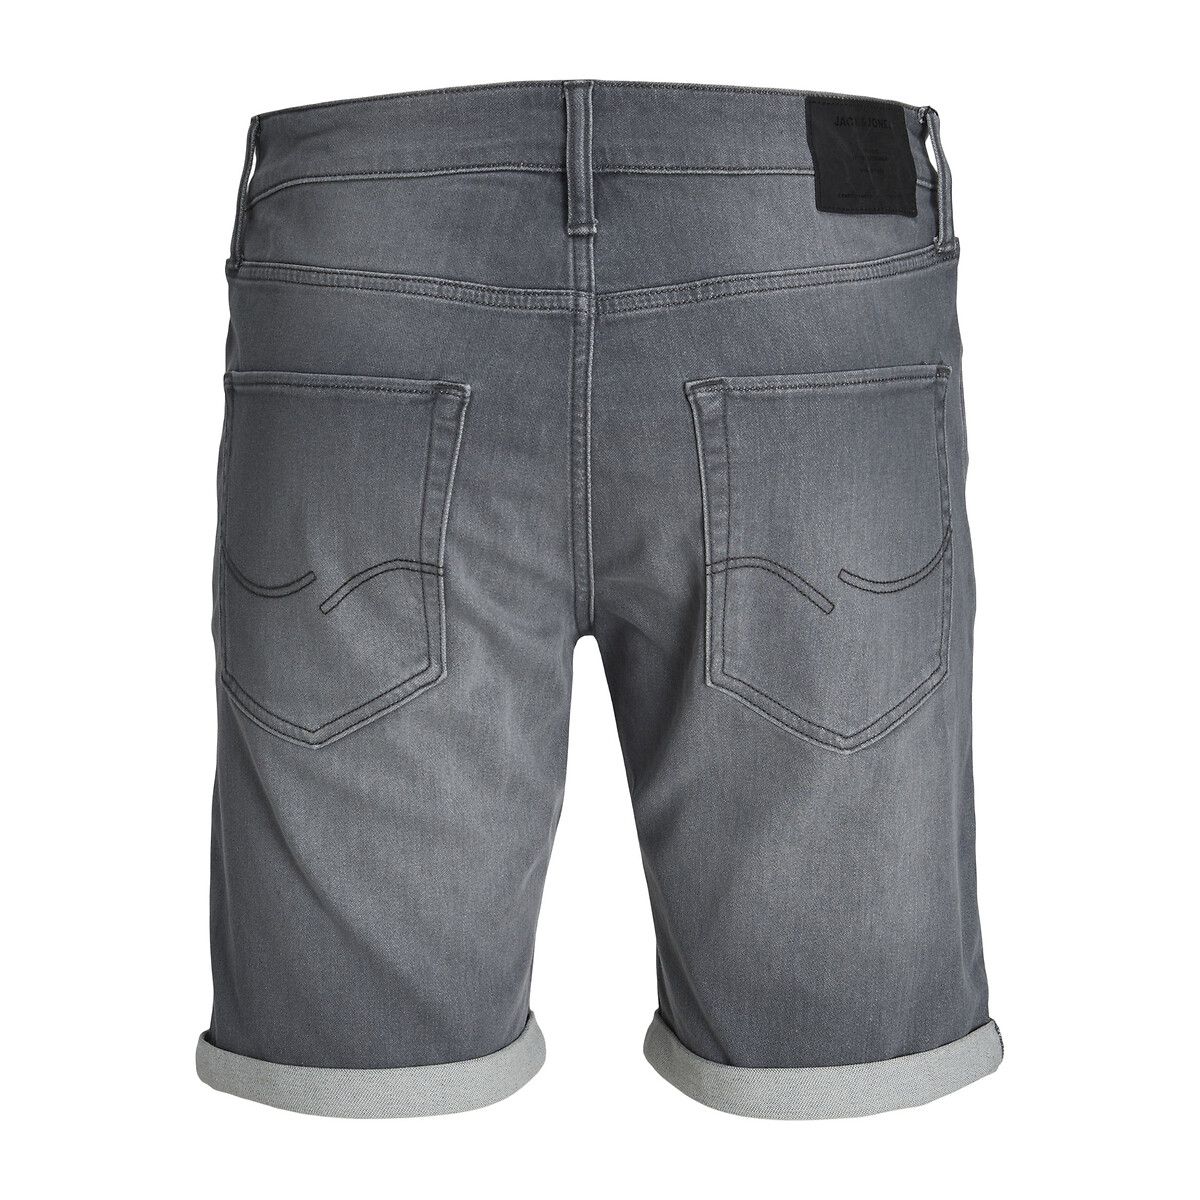 Шорты из джинсовой ткани  L серый LaRedoute, размер L - фото 2